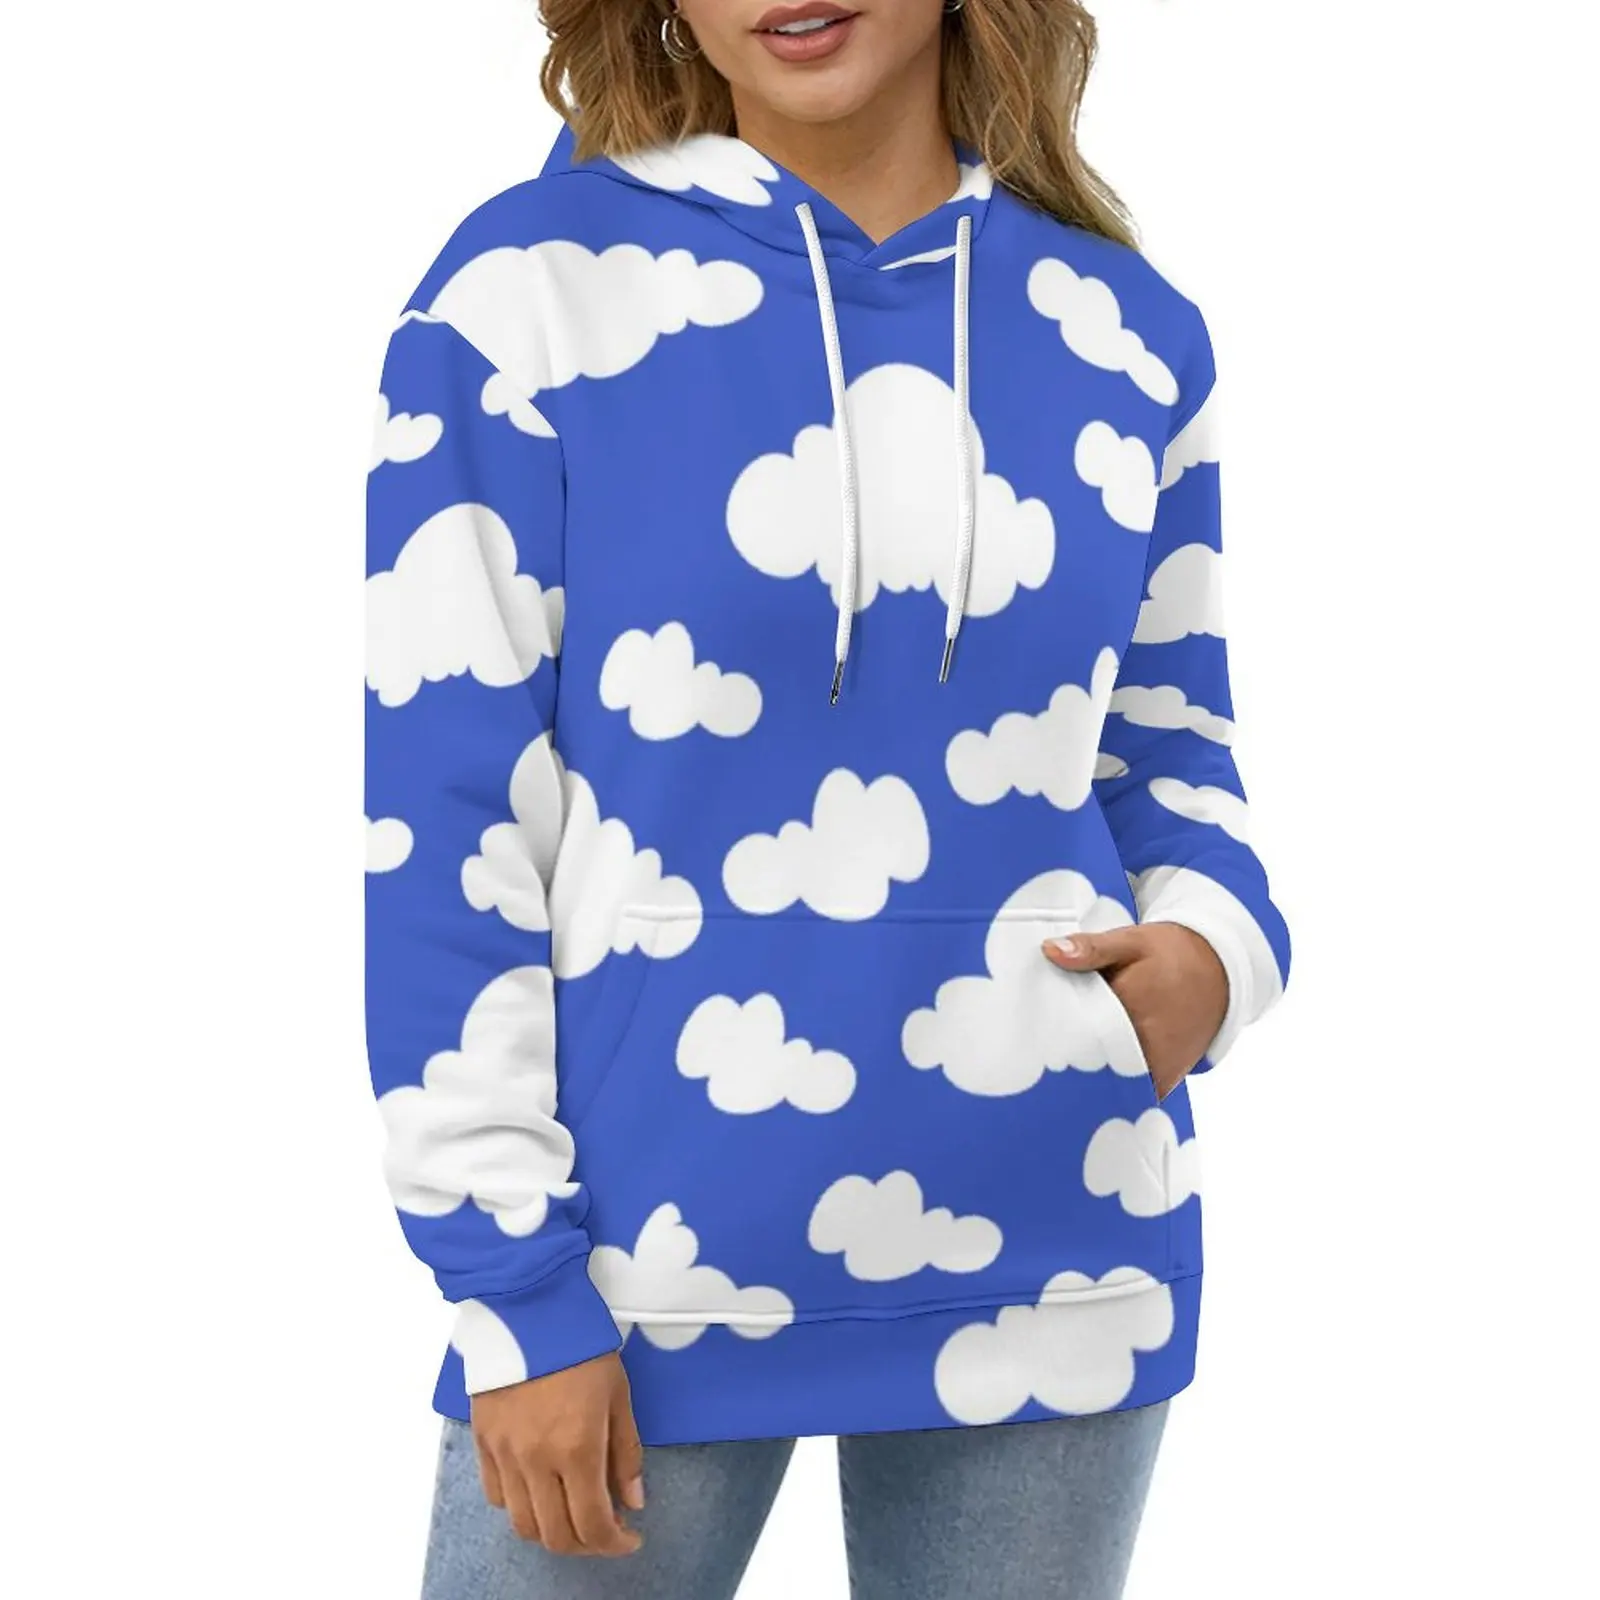 

Cartoon Cloud Casual Hoodies Cloudy Blue Sky Print Loose Hoodie Long-Sleeve Streetwear Oversized Sweatshirts Birthday Present